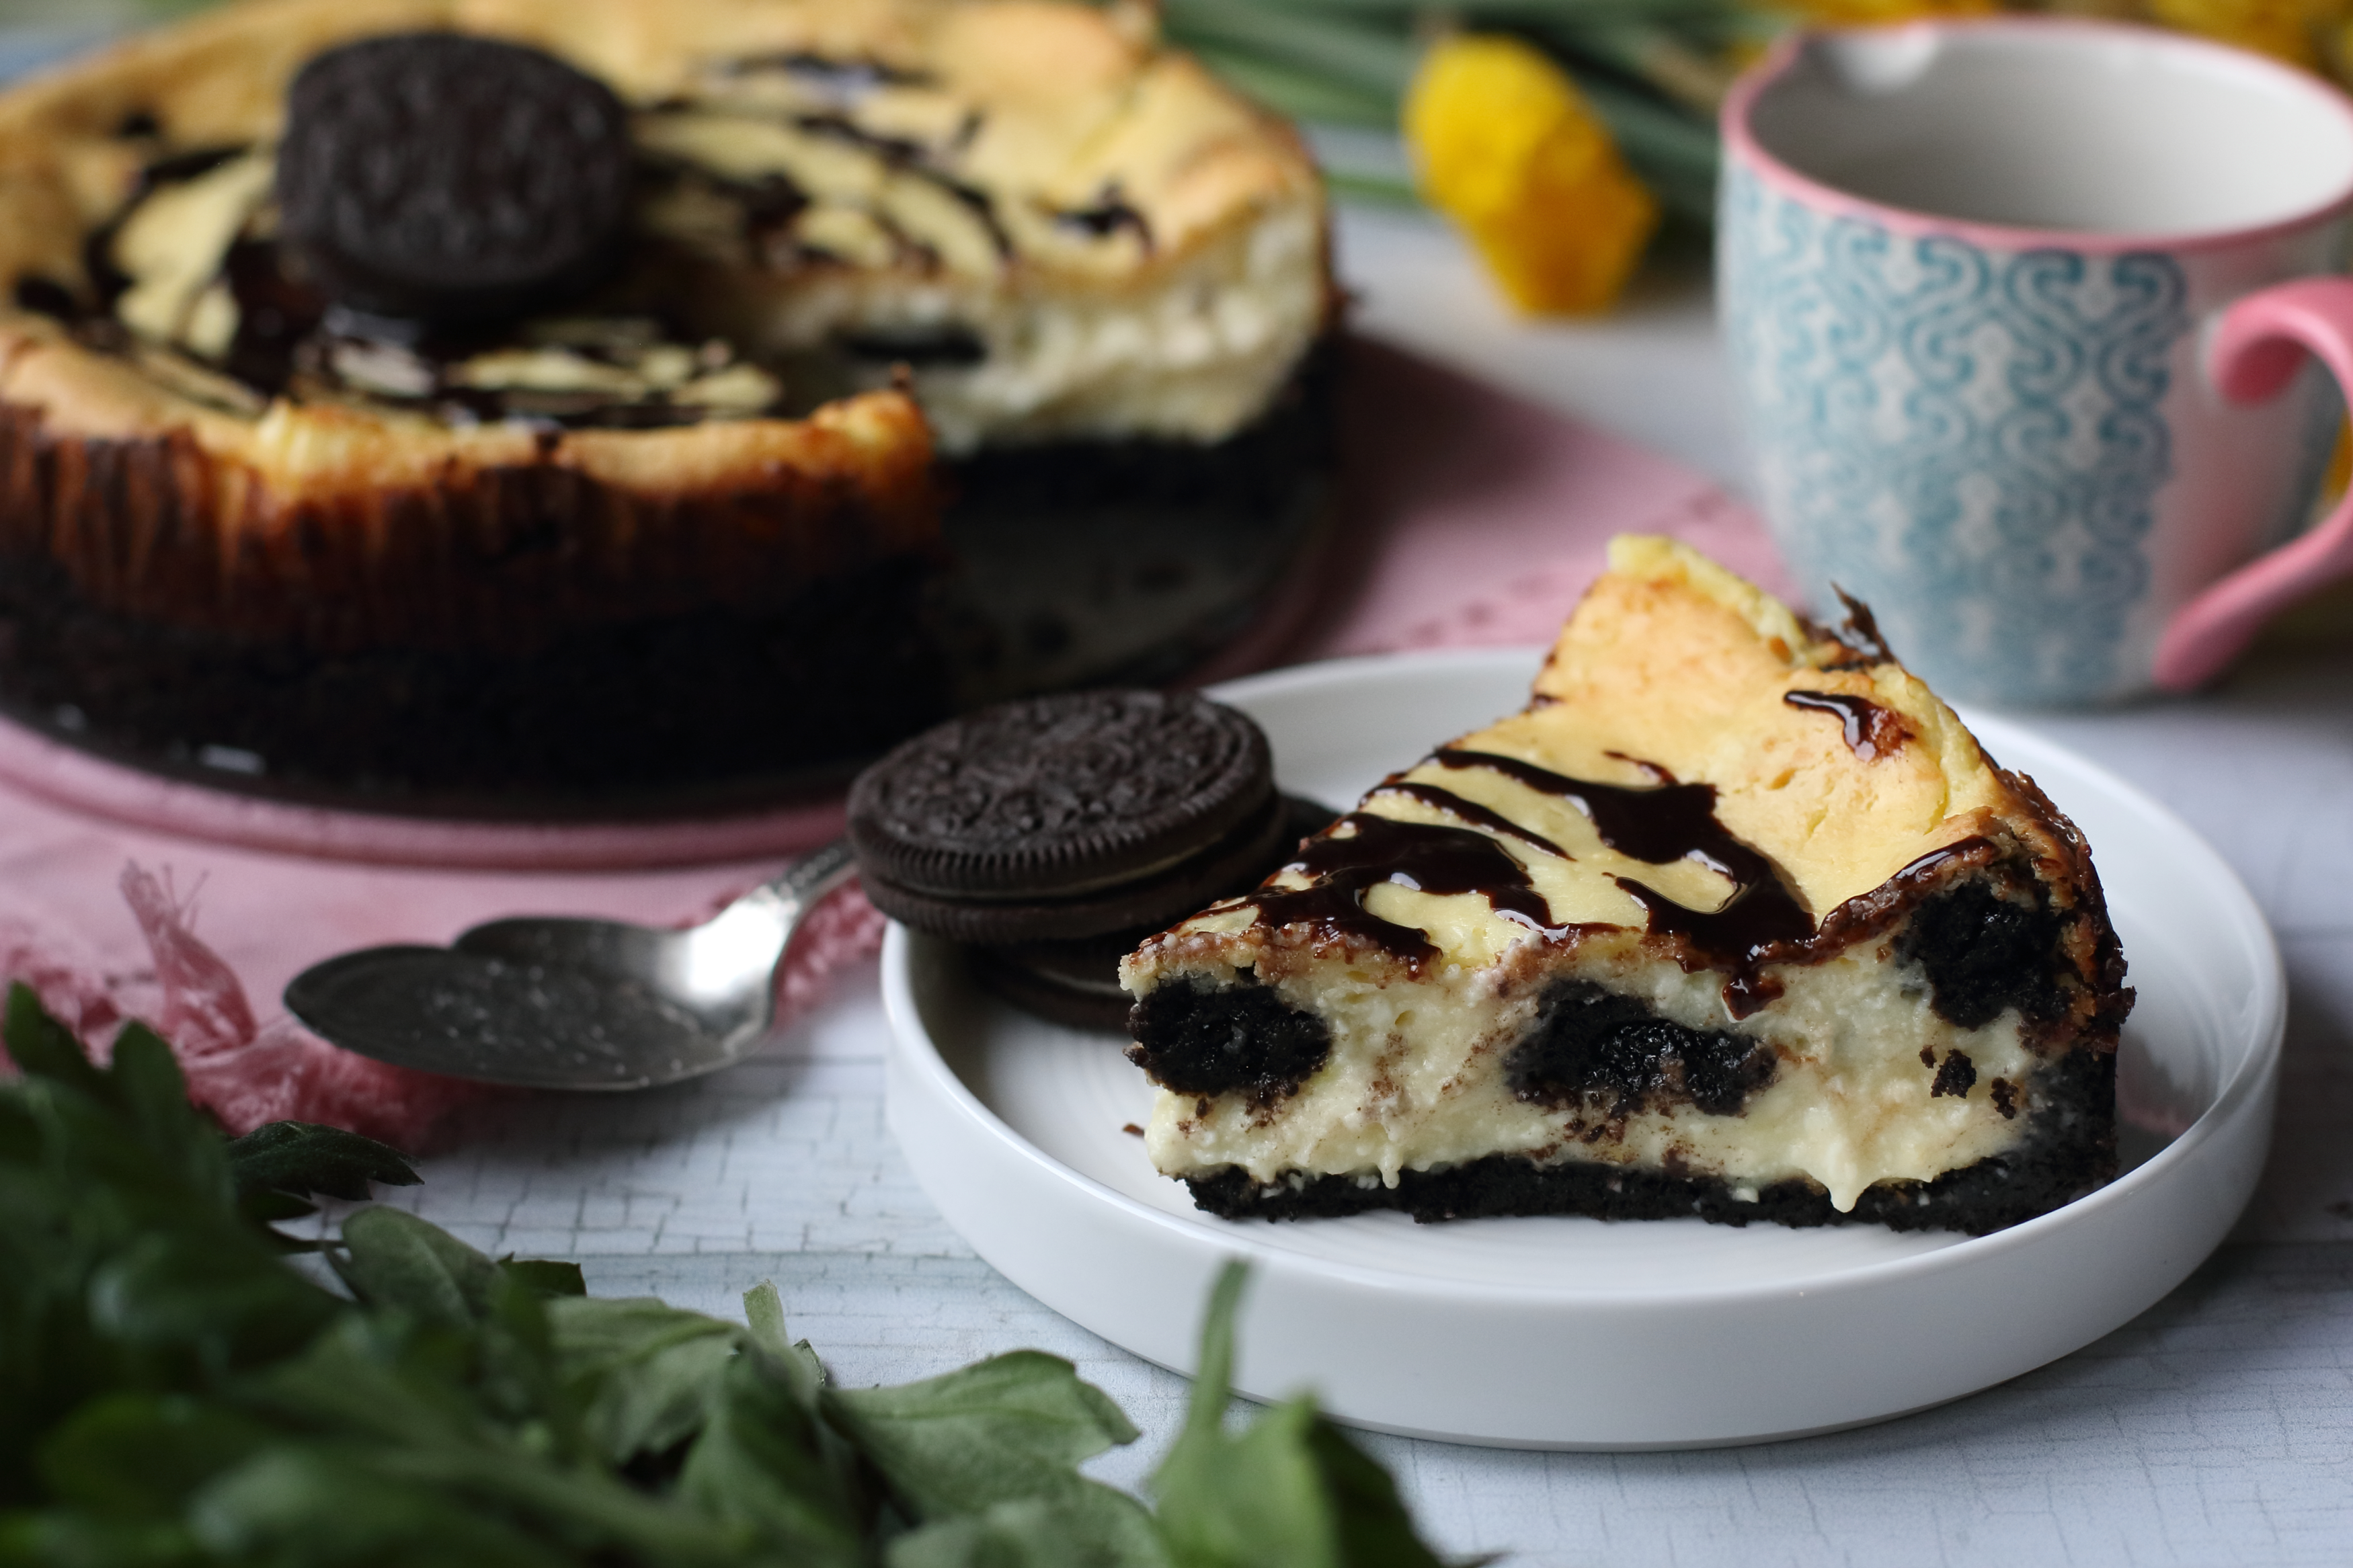 Torta is készülhet a népszerű Oreo kekszekből. Mutatjuk a tuti receptet -  kiskegyed.hu